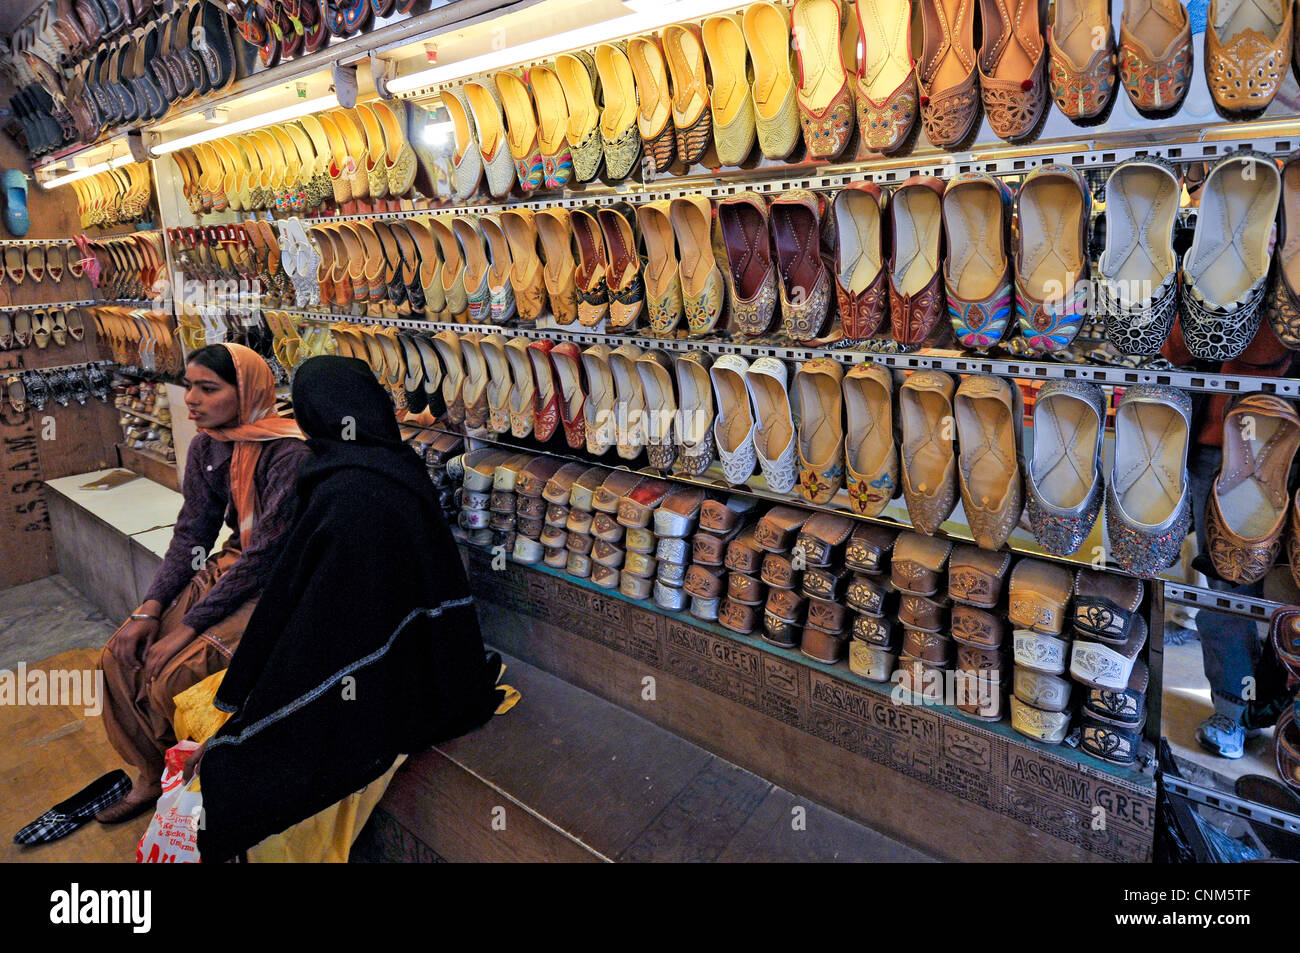 Asie Inde Punjab Amritsar certains clients dans un magasin de chaussures Banque D'Images